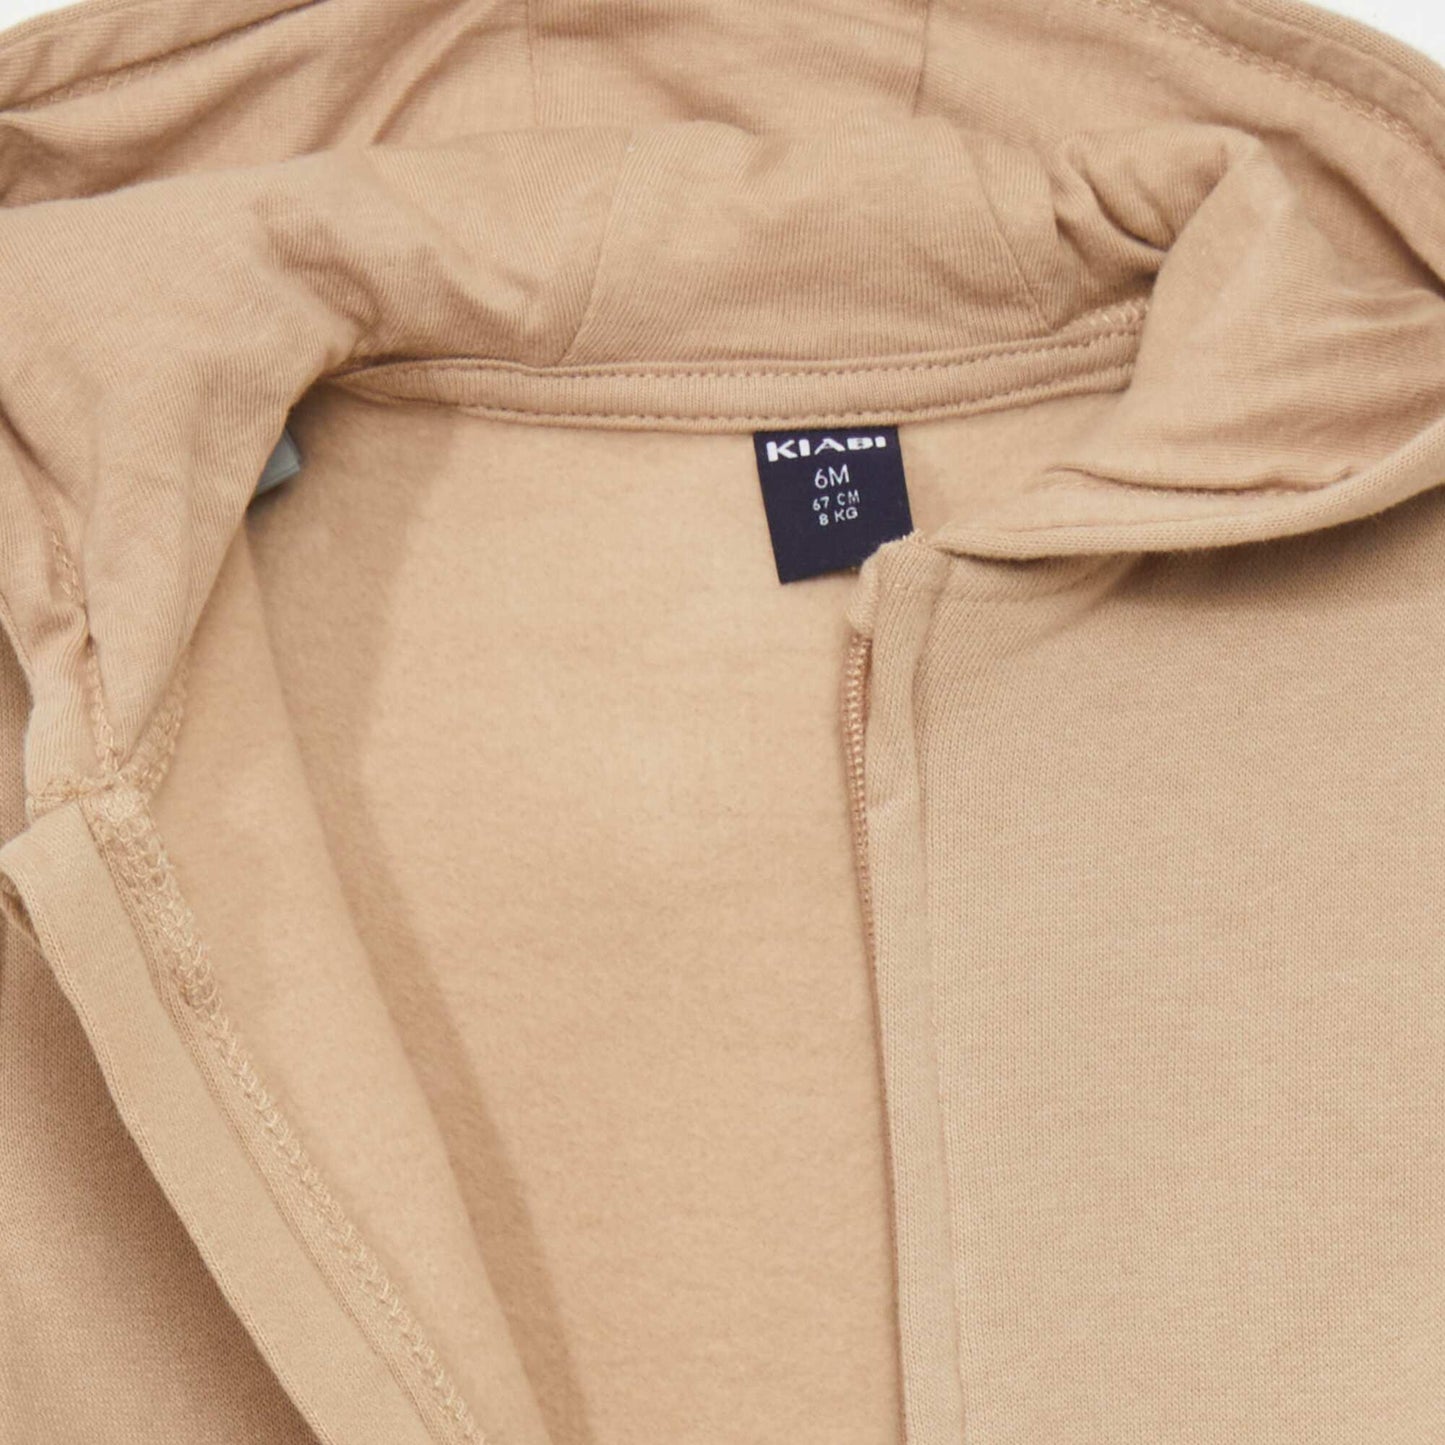 Zip-up sweatshirt fabric sweater BEIGE